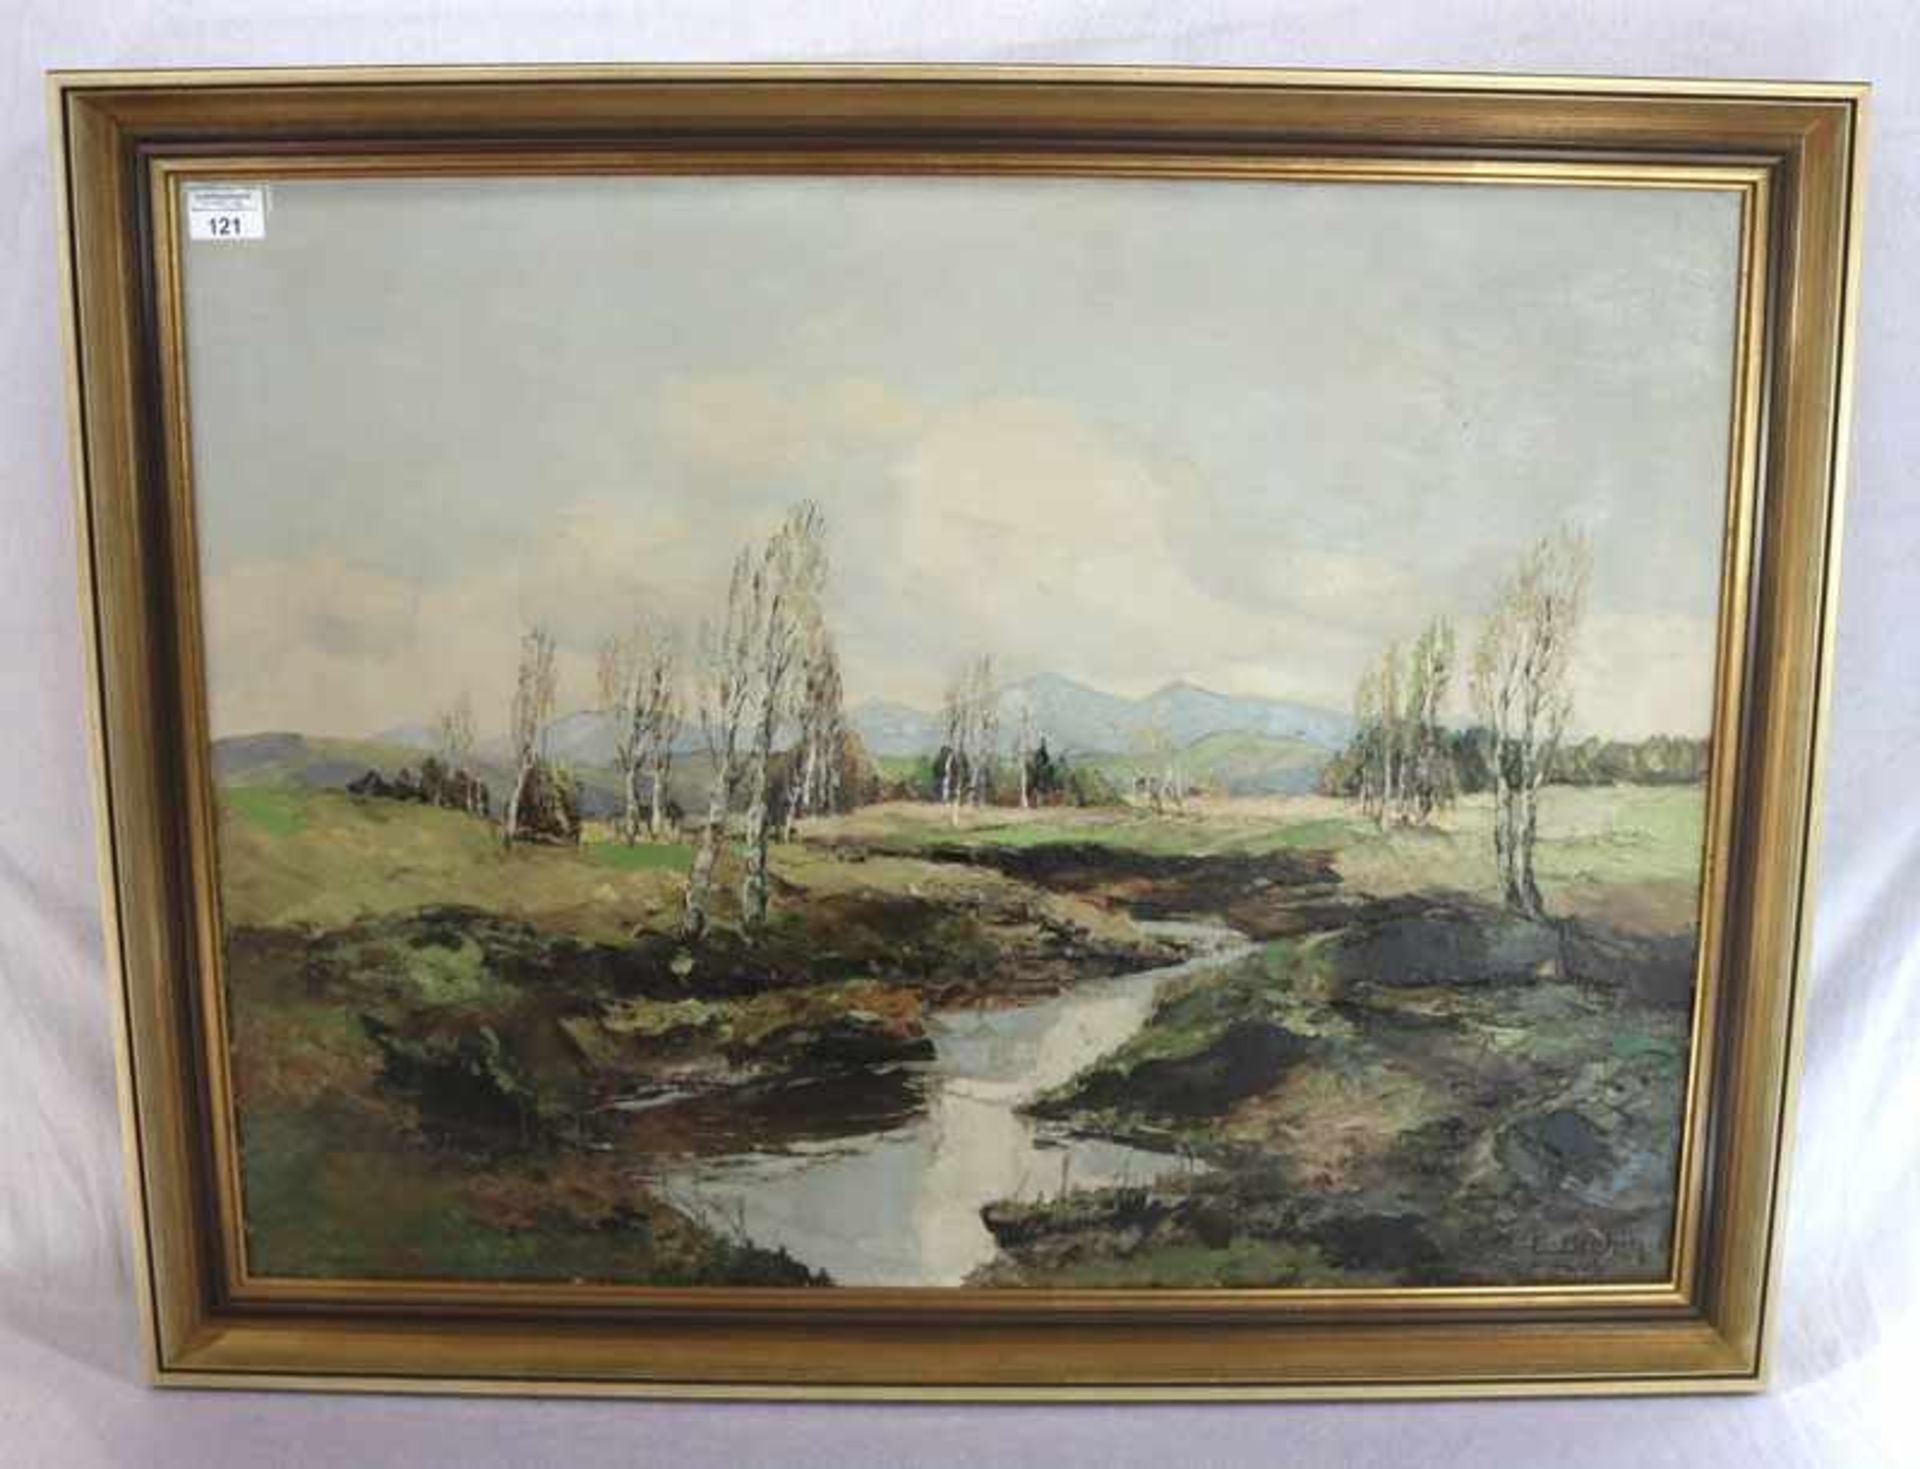 Gemälde ÖL/LW 'Murnauer Moor', signiert E. Brehm, München, * um 1930, in München tätiger